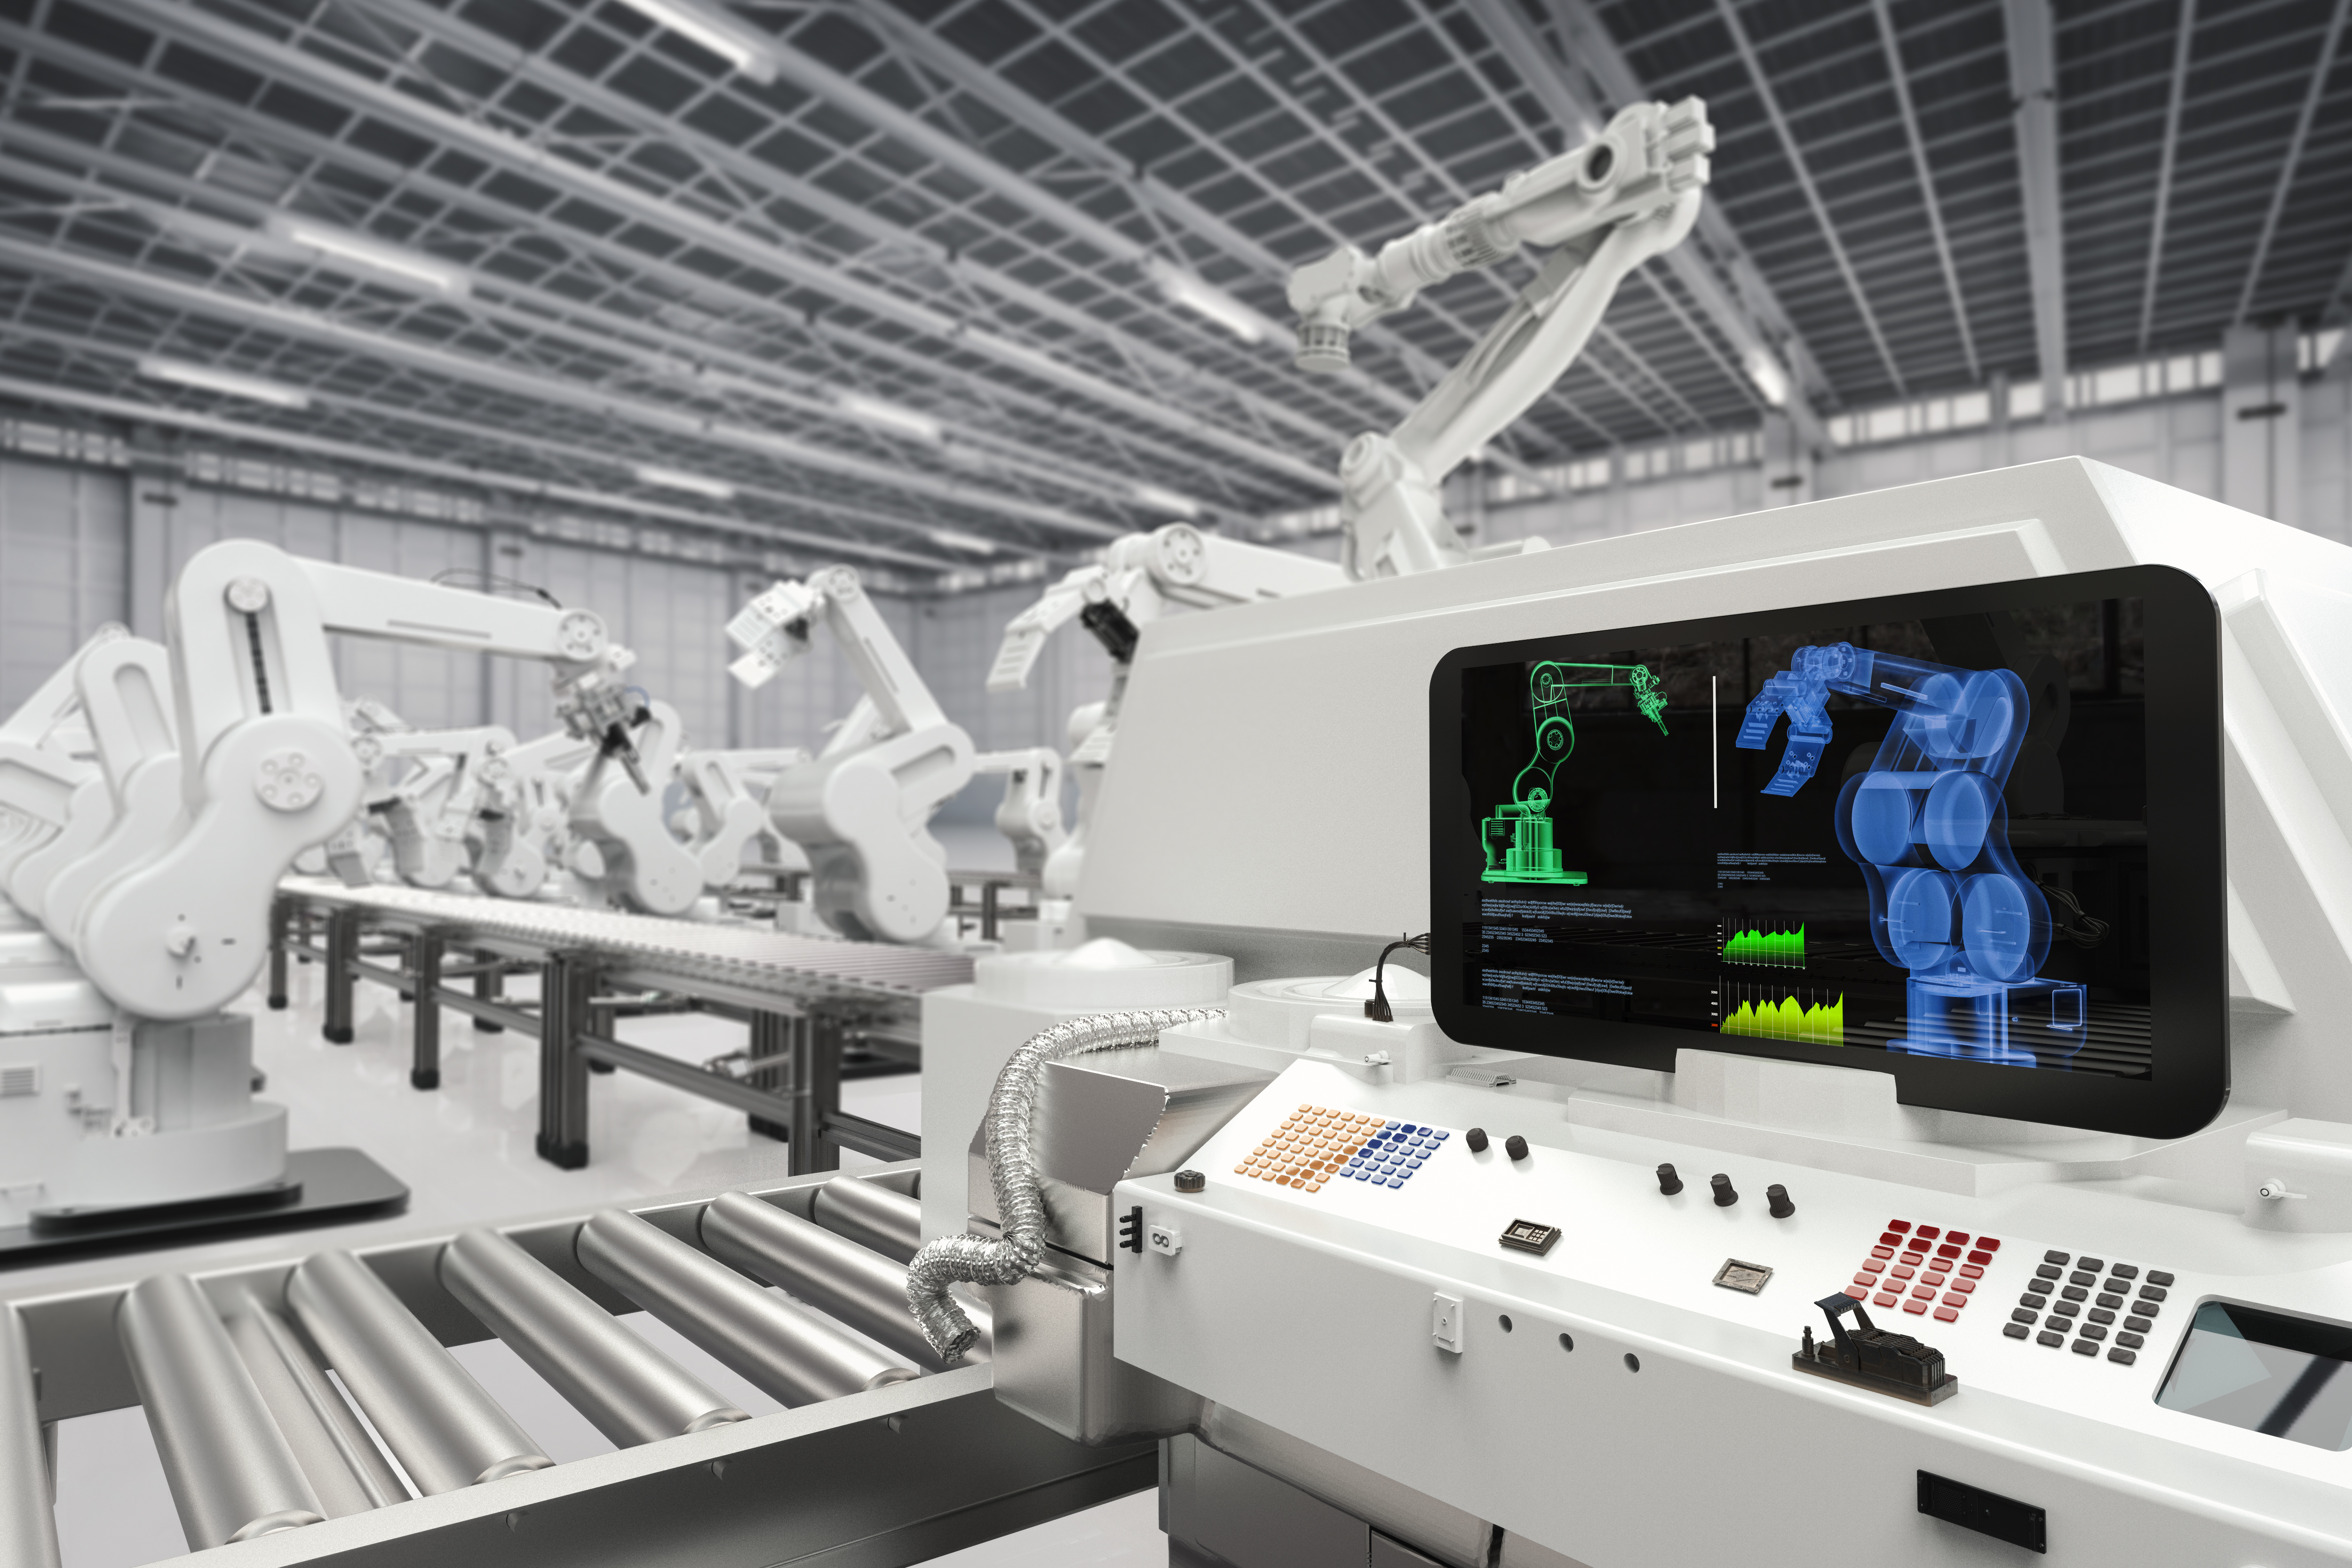 Automation technology. Мультимедиа в промышленности. Промышленность и технологии. Автоматизированные заводы будущего. Современные производственные технологии.